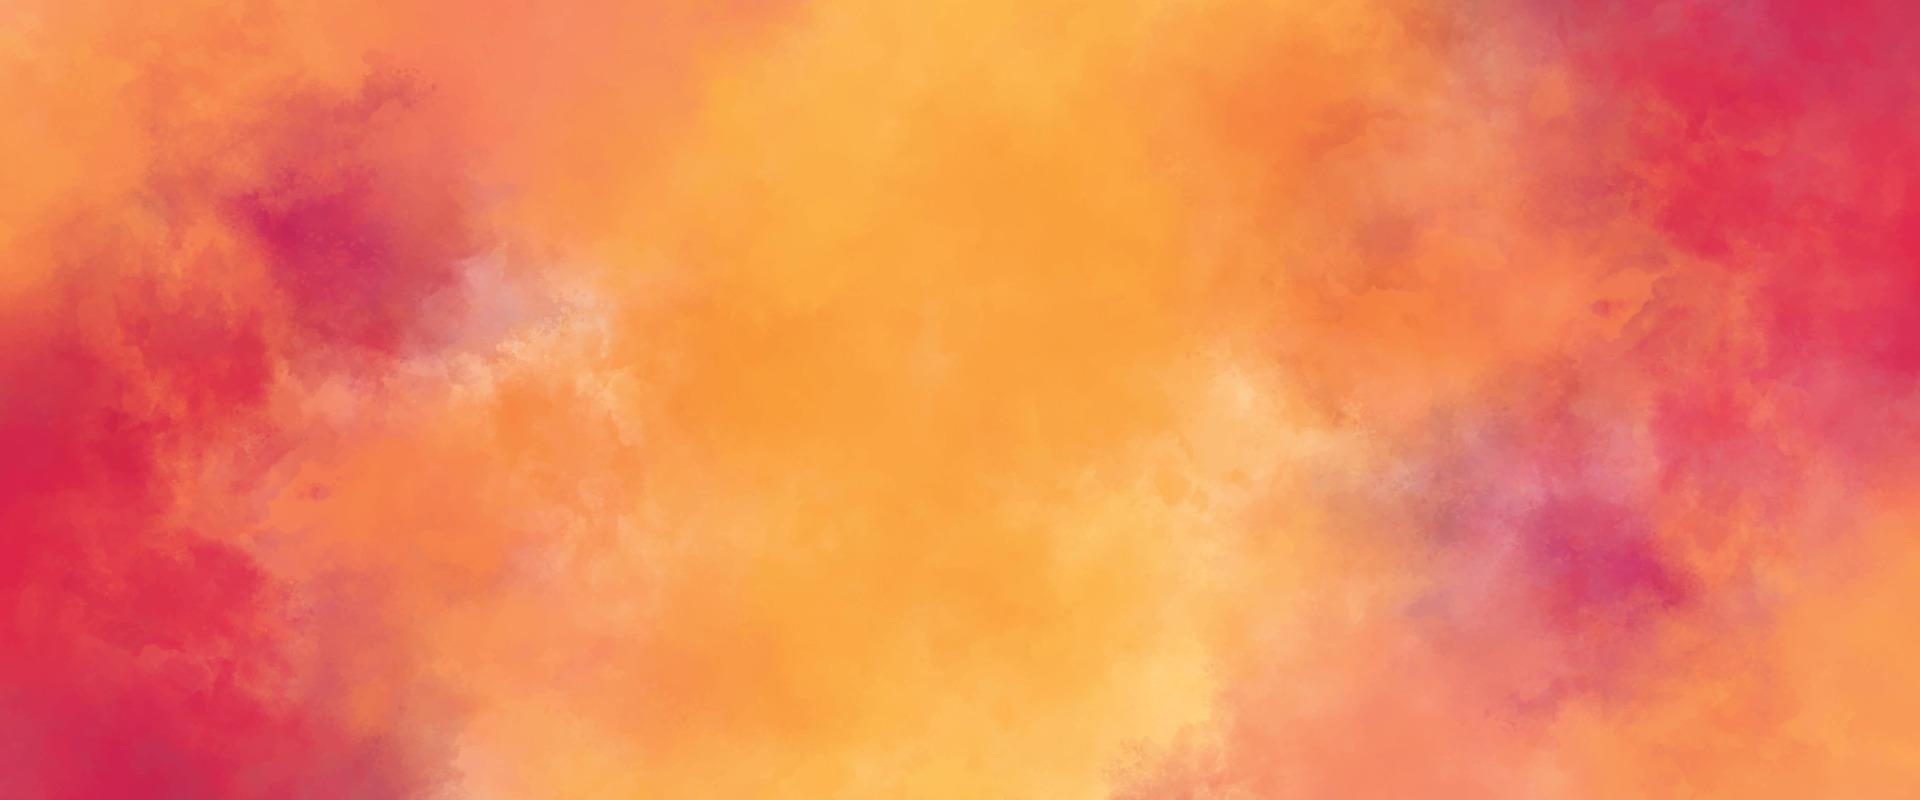 couleur de craie jaune orange rouge sur fond de papier vintage peinture dans des couleurs douces sur la vieille conception de texture de papier froissé, peinture aquarelle abstraite élégante. texture de papier magenta. ciel de galaxie aquarelle vecteur